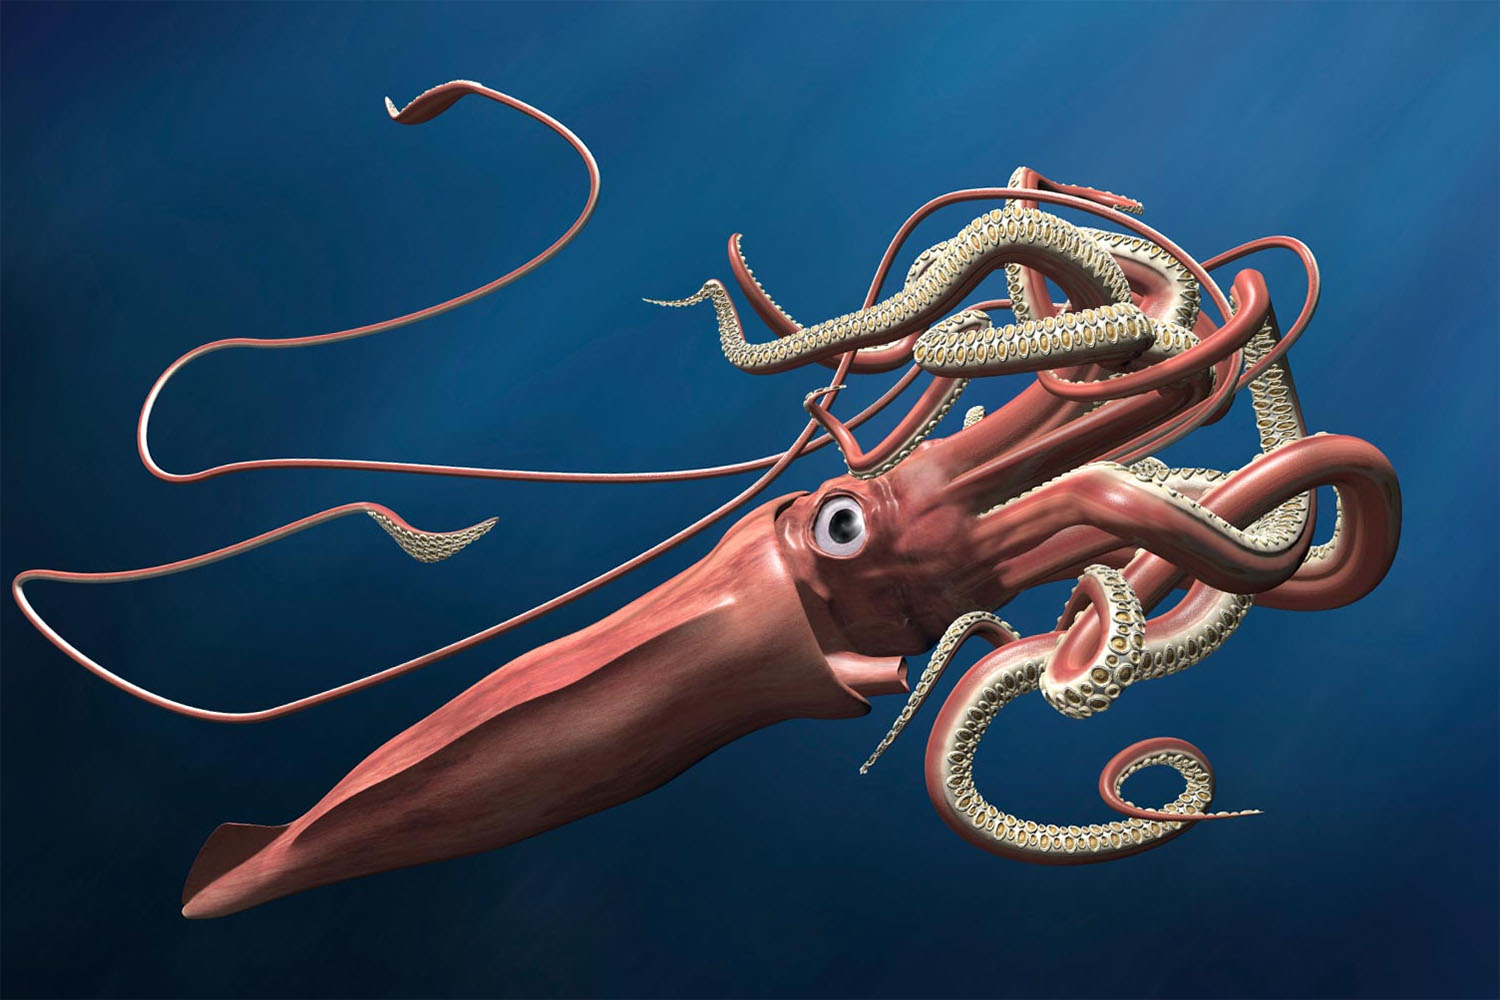 Investigadores do CIIMAR ajudam a desvendar ADN de "monstro" marinho